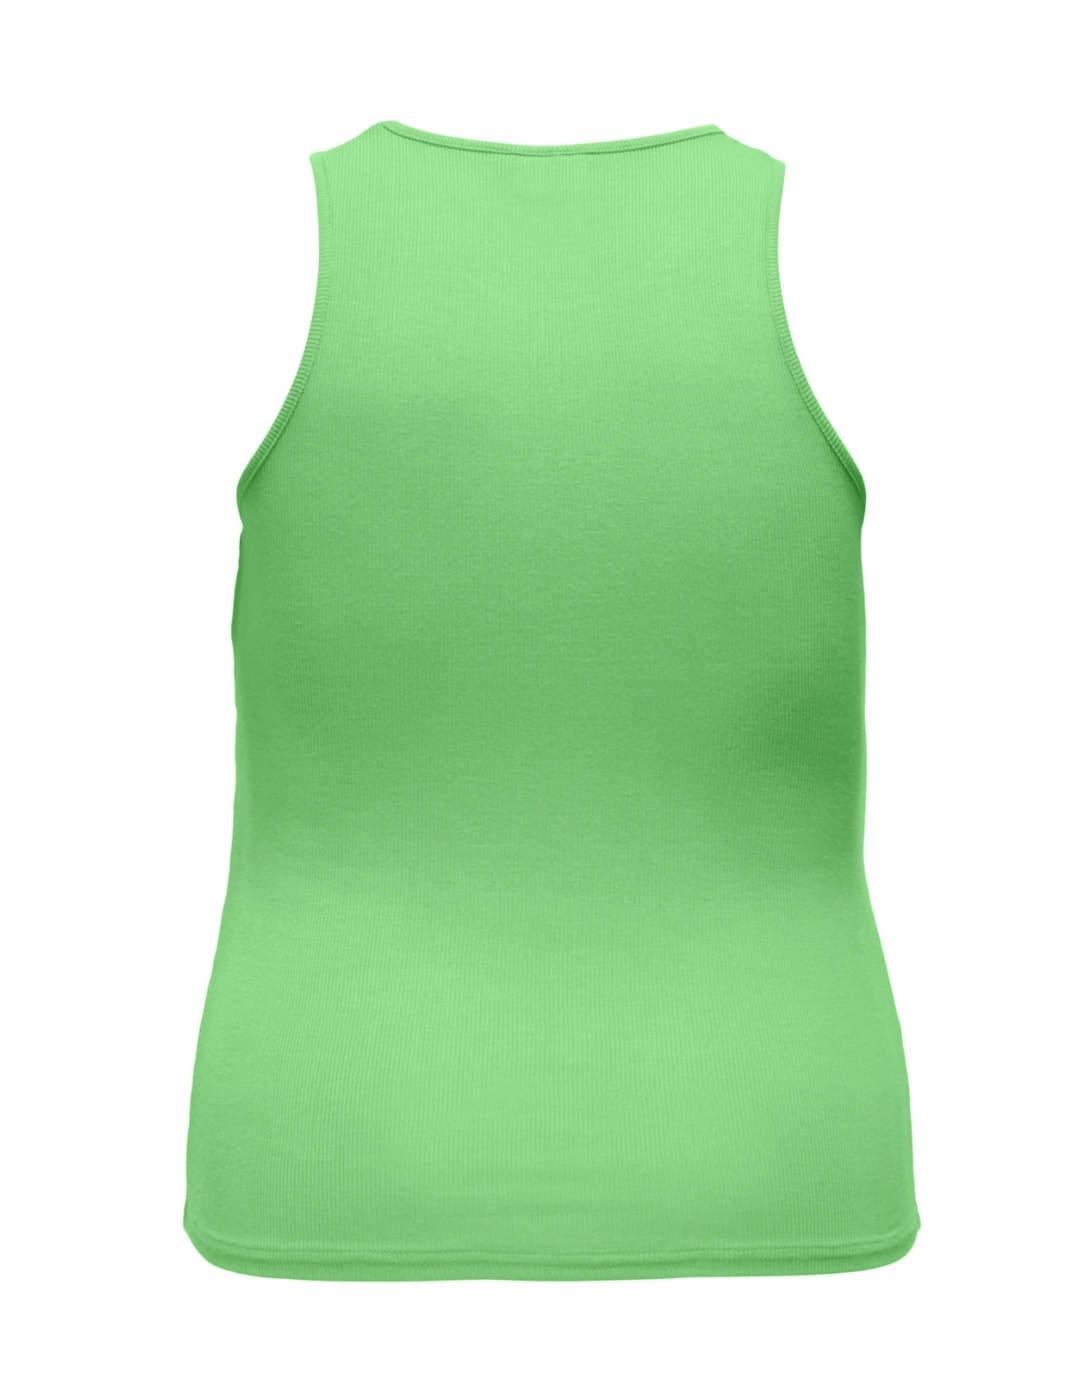 Camiseta Only Carmakoma verde de tirantes para mujer